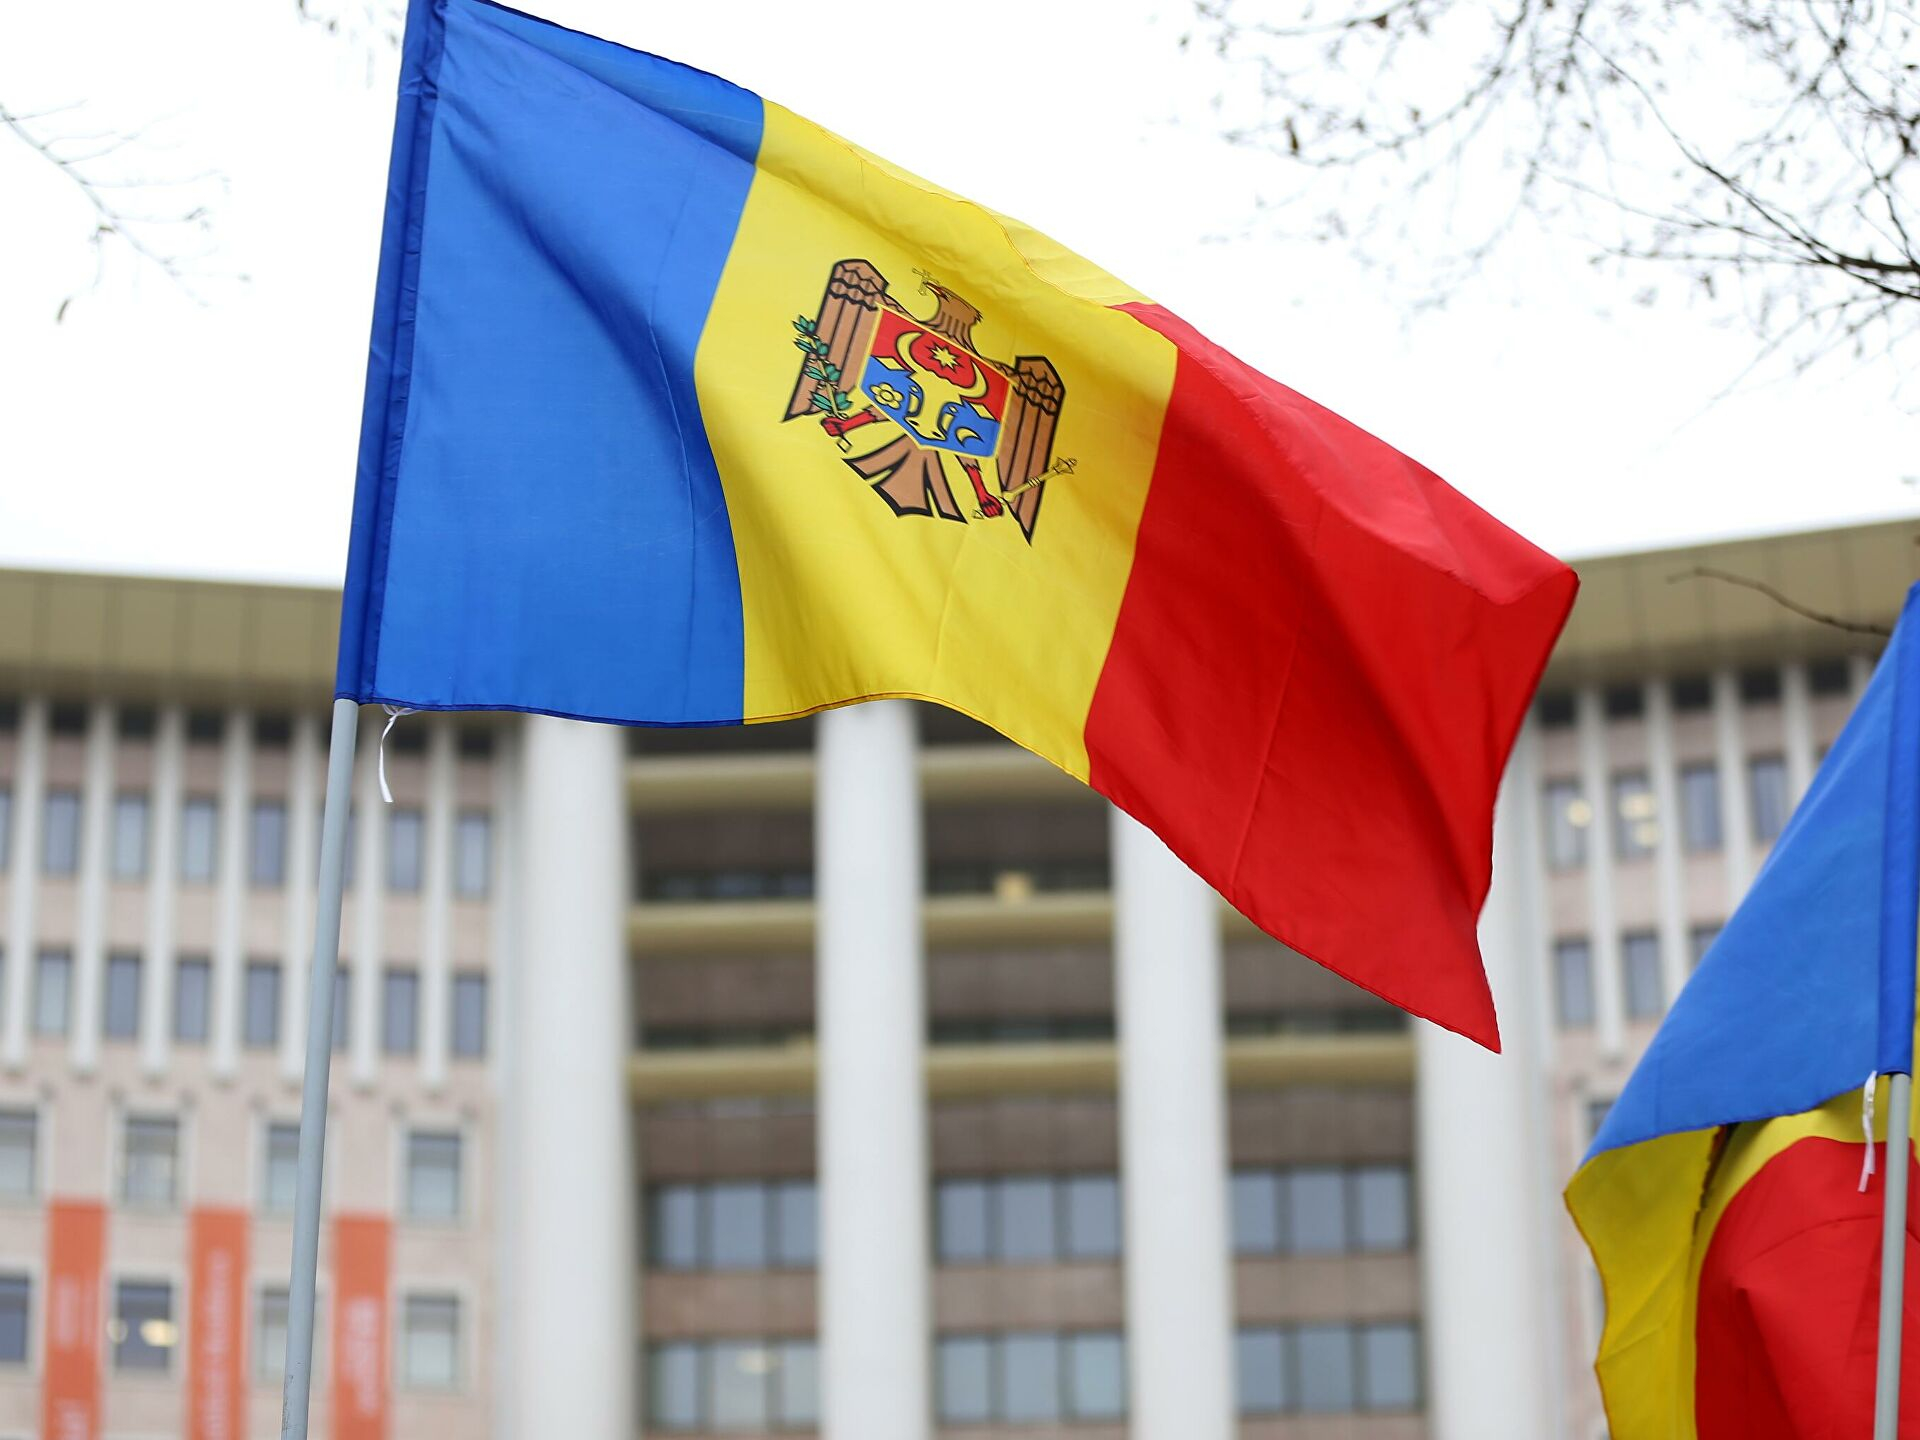 Санду предложила переименовать государственный язык в Молдове